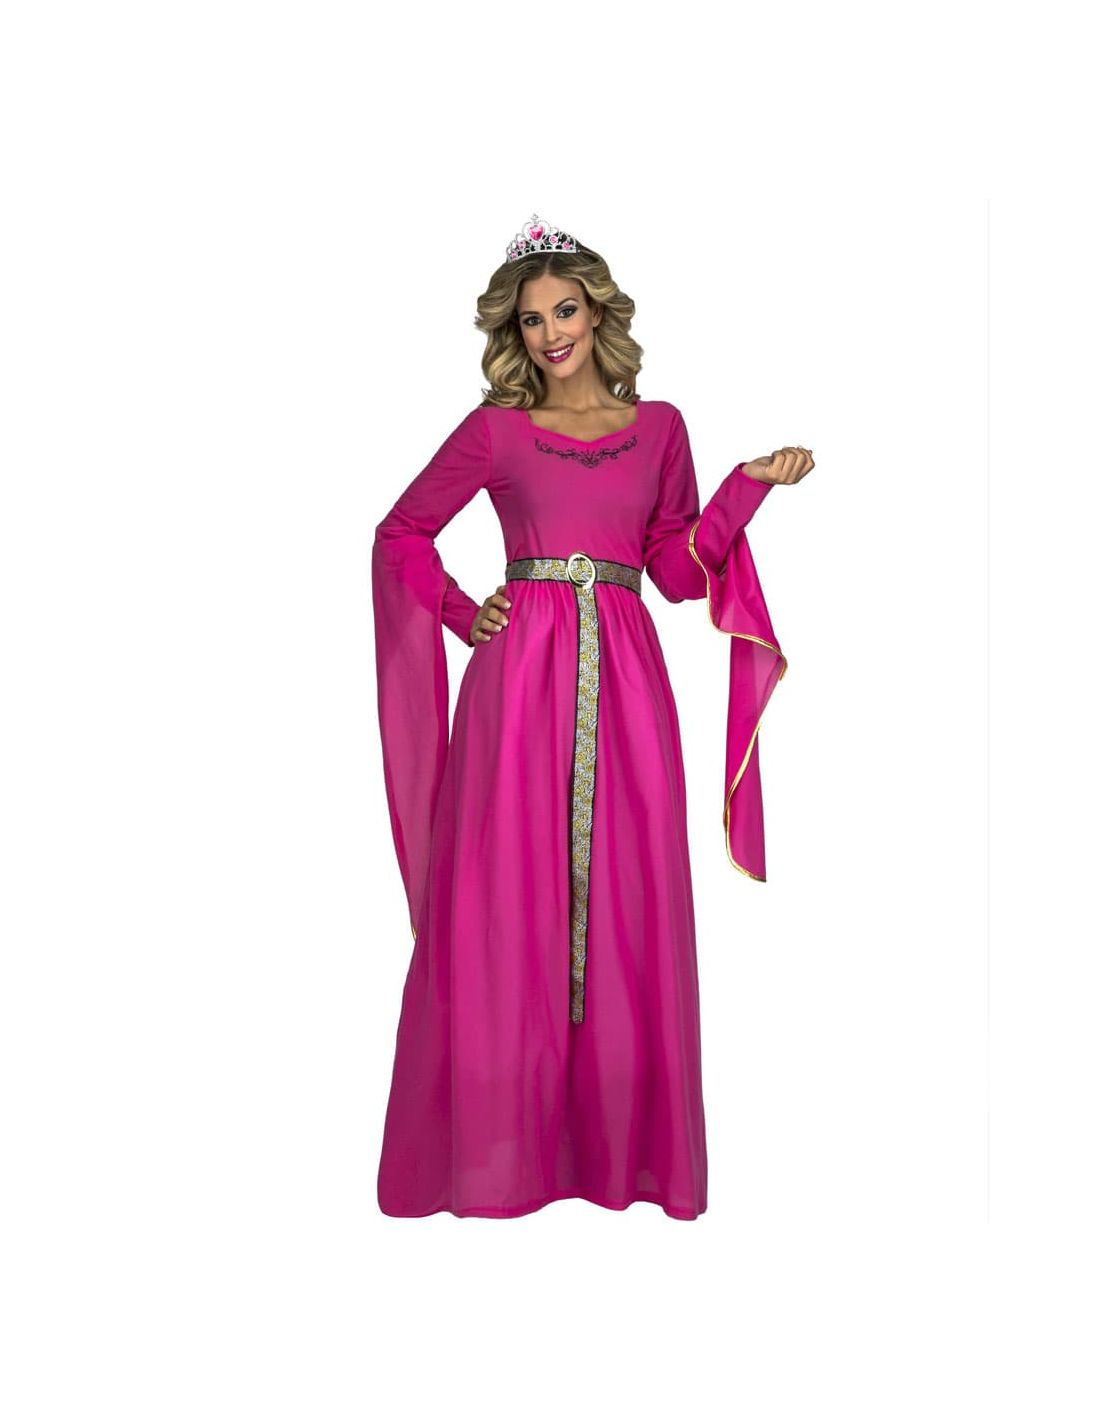 Disfraz Princesa Medieval Rosa mujer | Tienda de Online ...